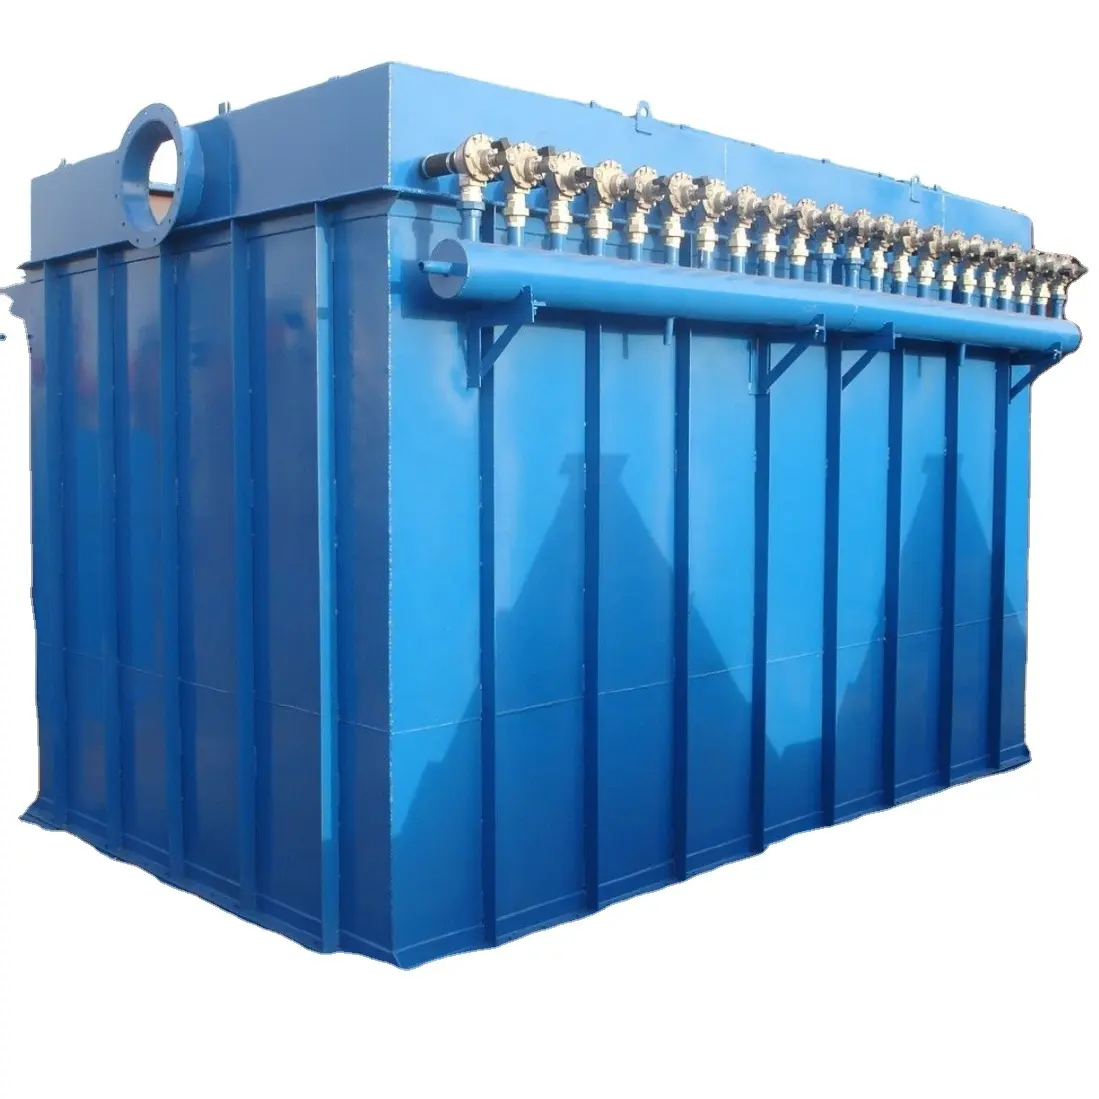 ESP kolektor debu pulsa baru untuk ketel & tanaman daya sistem pengumpulan debu yang efisien dengan mesin pompa & komponen inti Motor